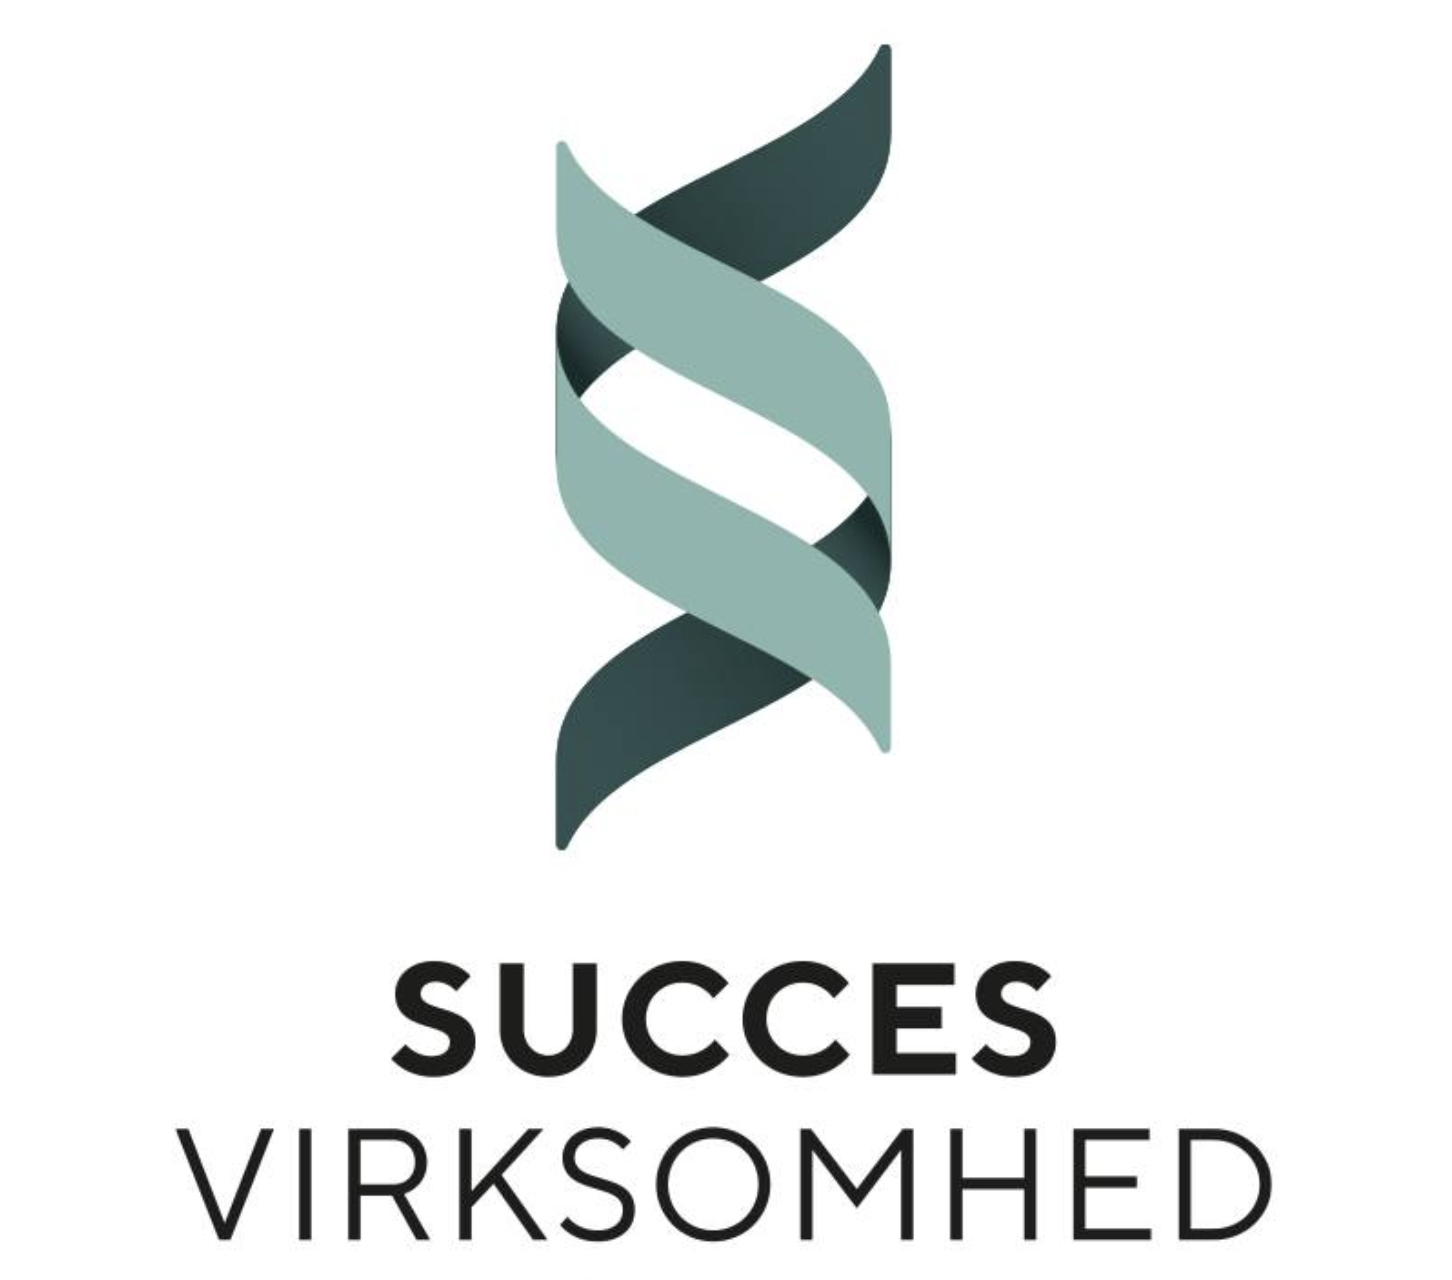 Success virksomhed